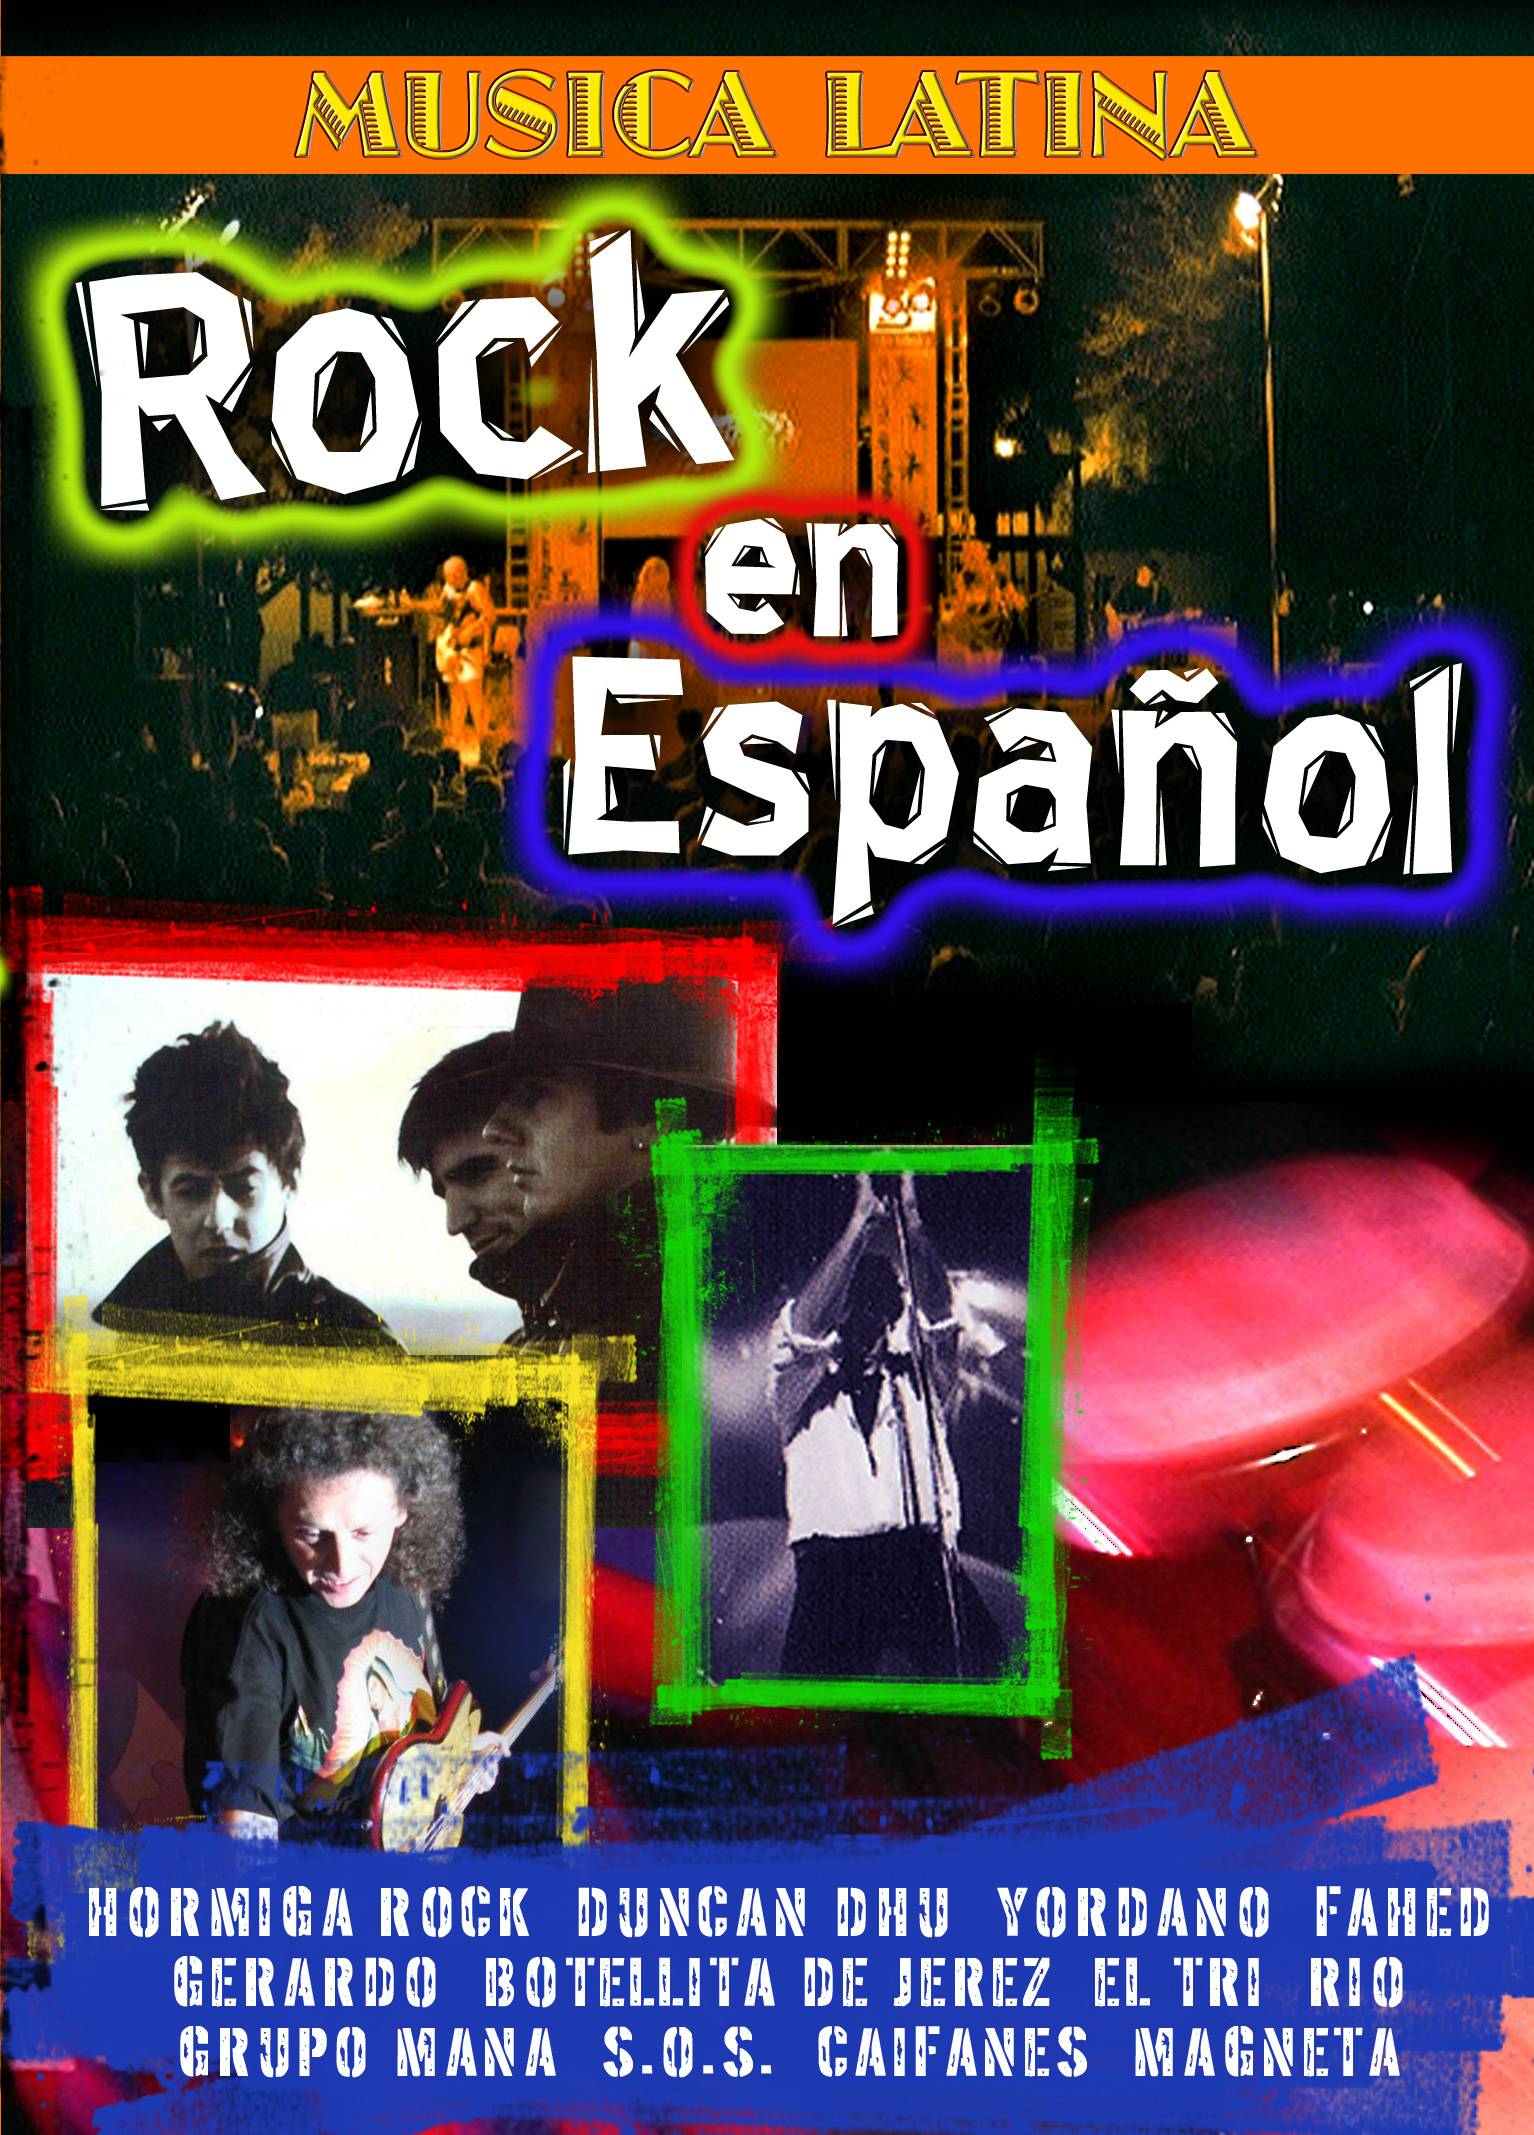 Rock En Espanol - MVD Entertainment Group B2B